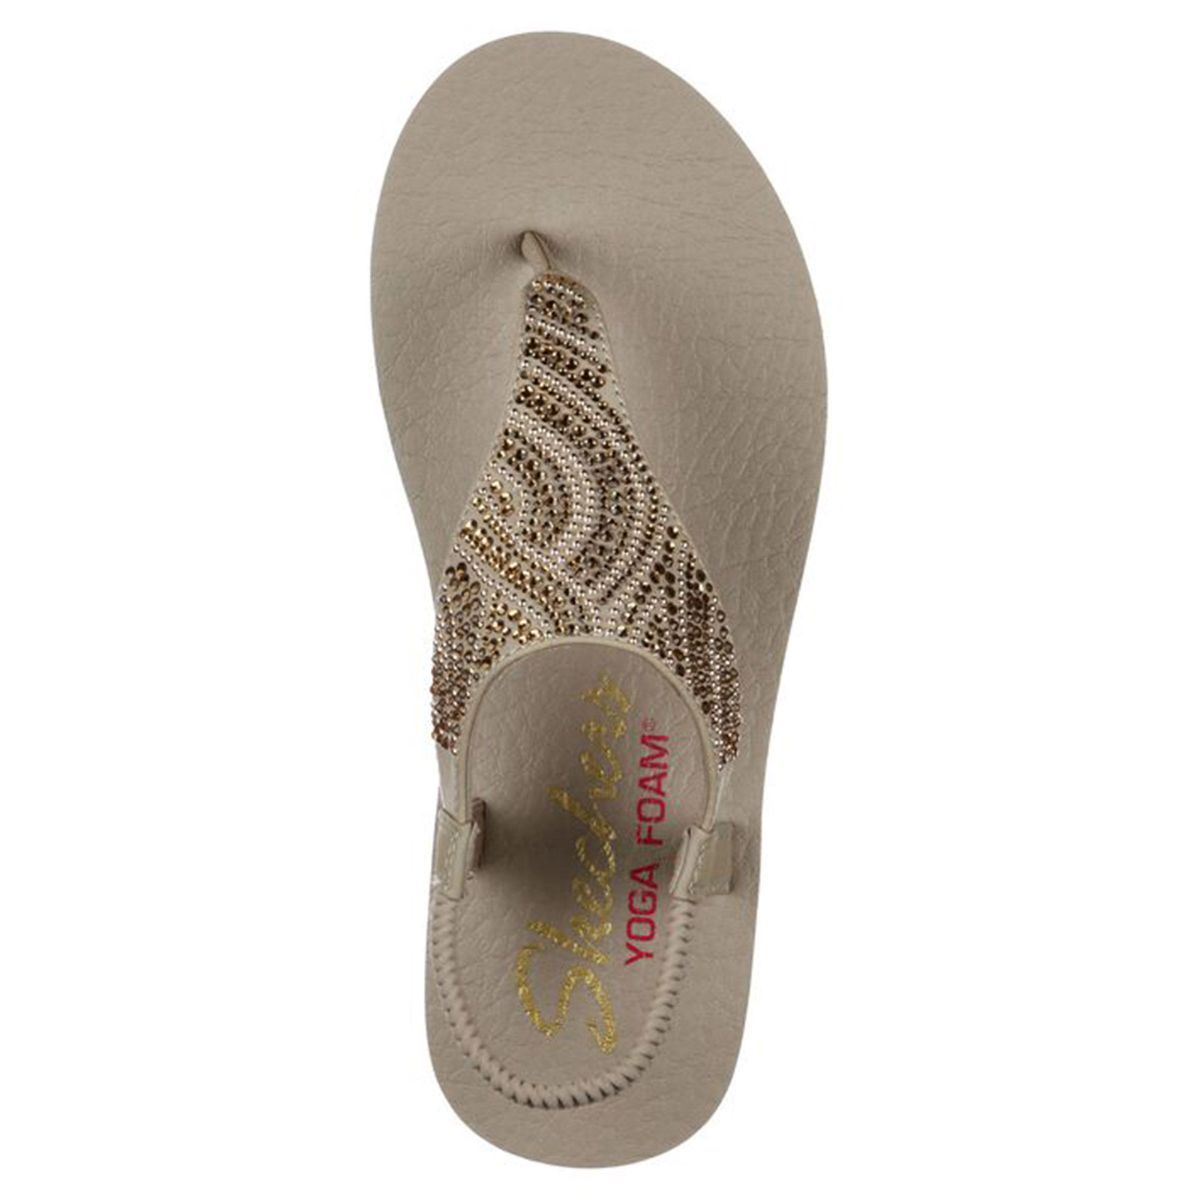 Skechers | Shoes | Skechers Cali Vinyasa Bindu Yoga Foam Flip Flop |  Poshmark